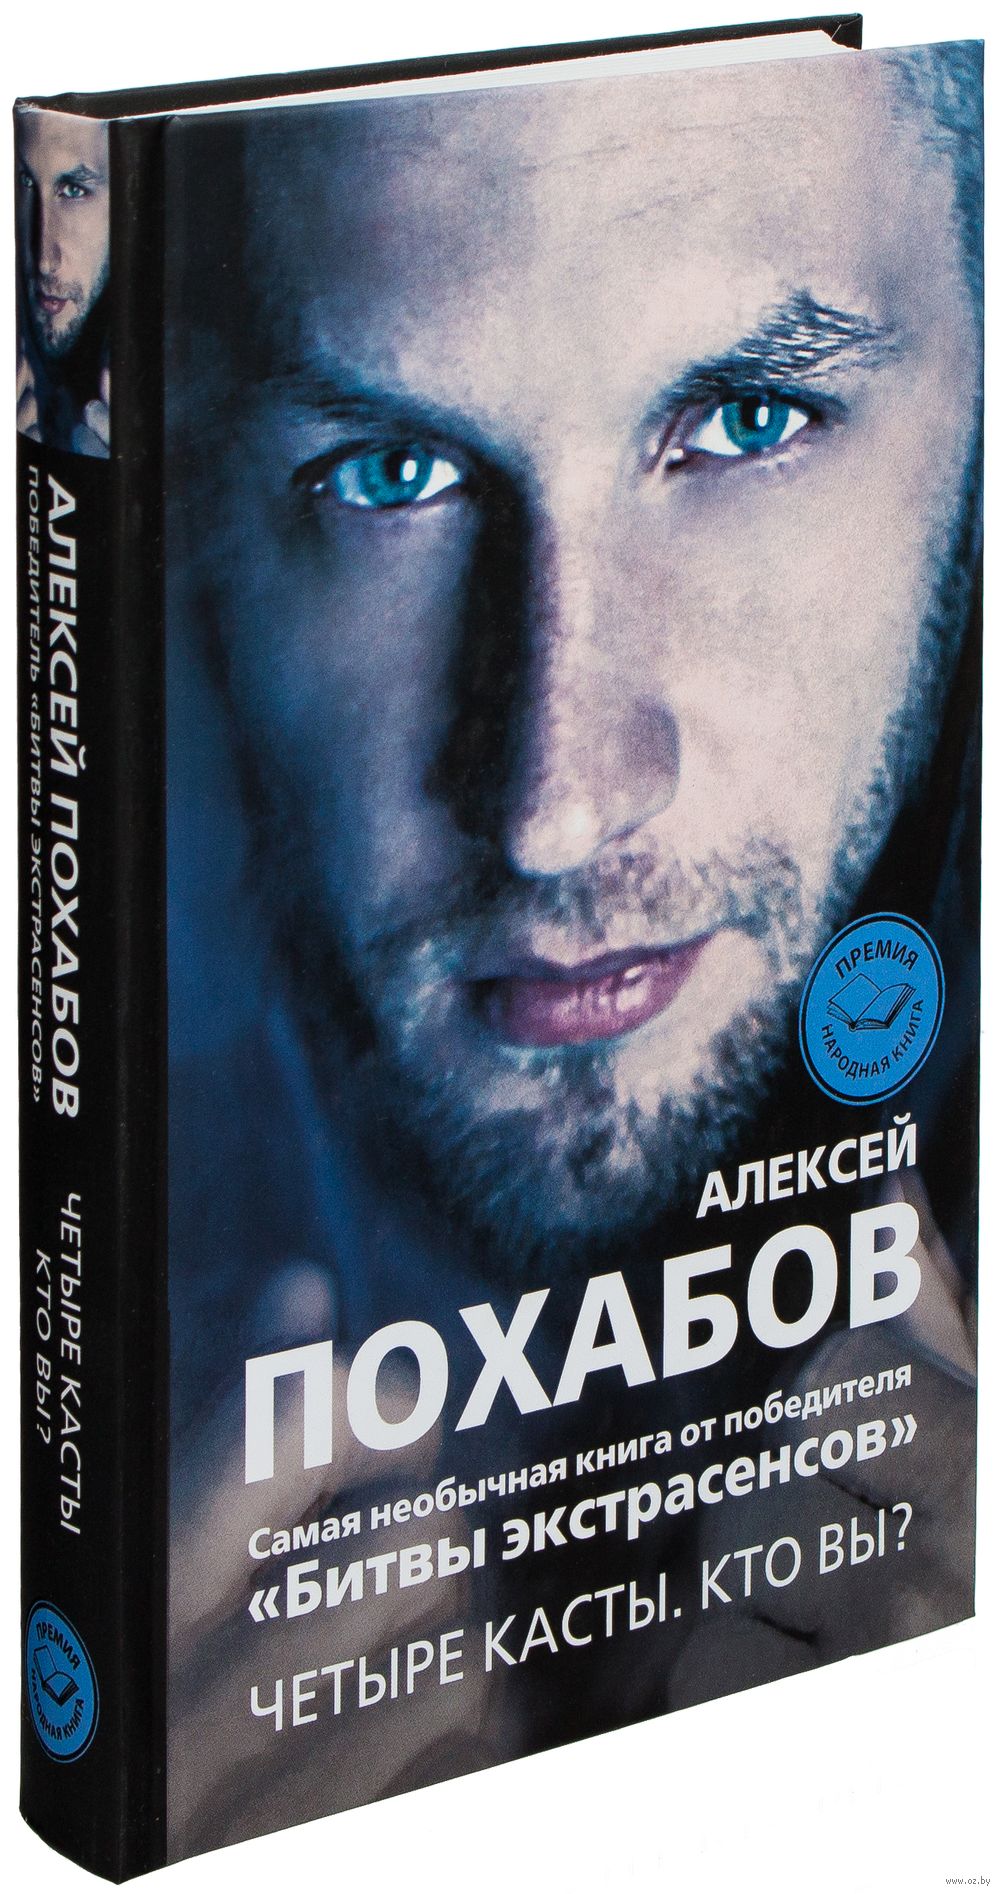 Алексей похабов скачать книгу бесплатно